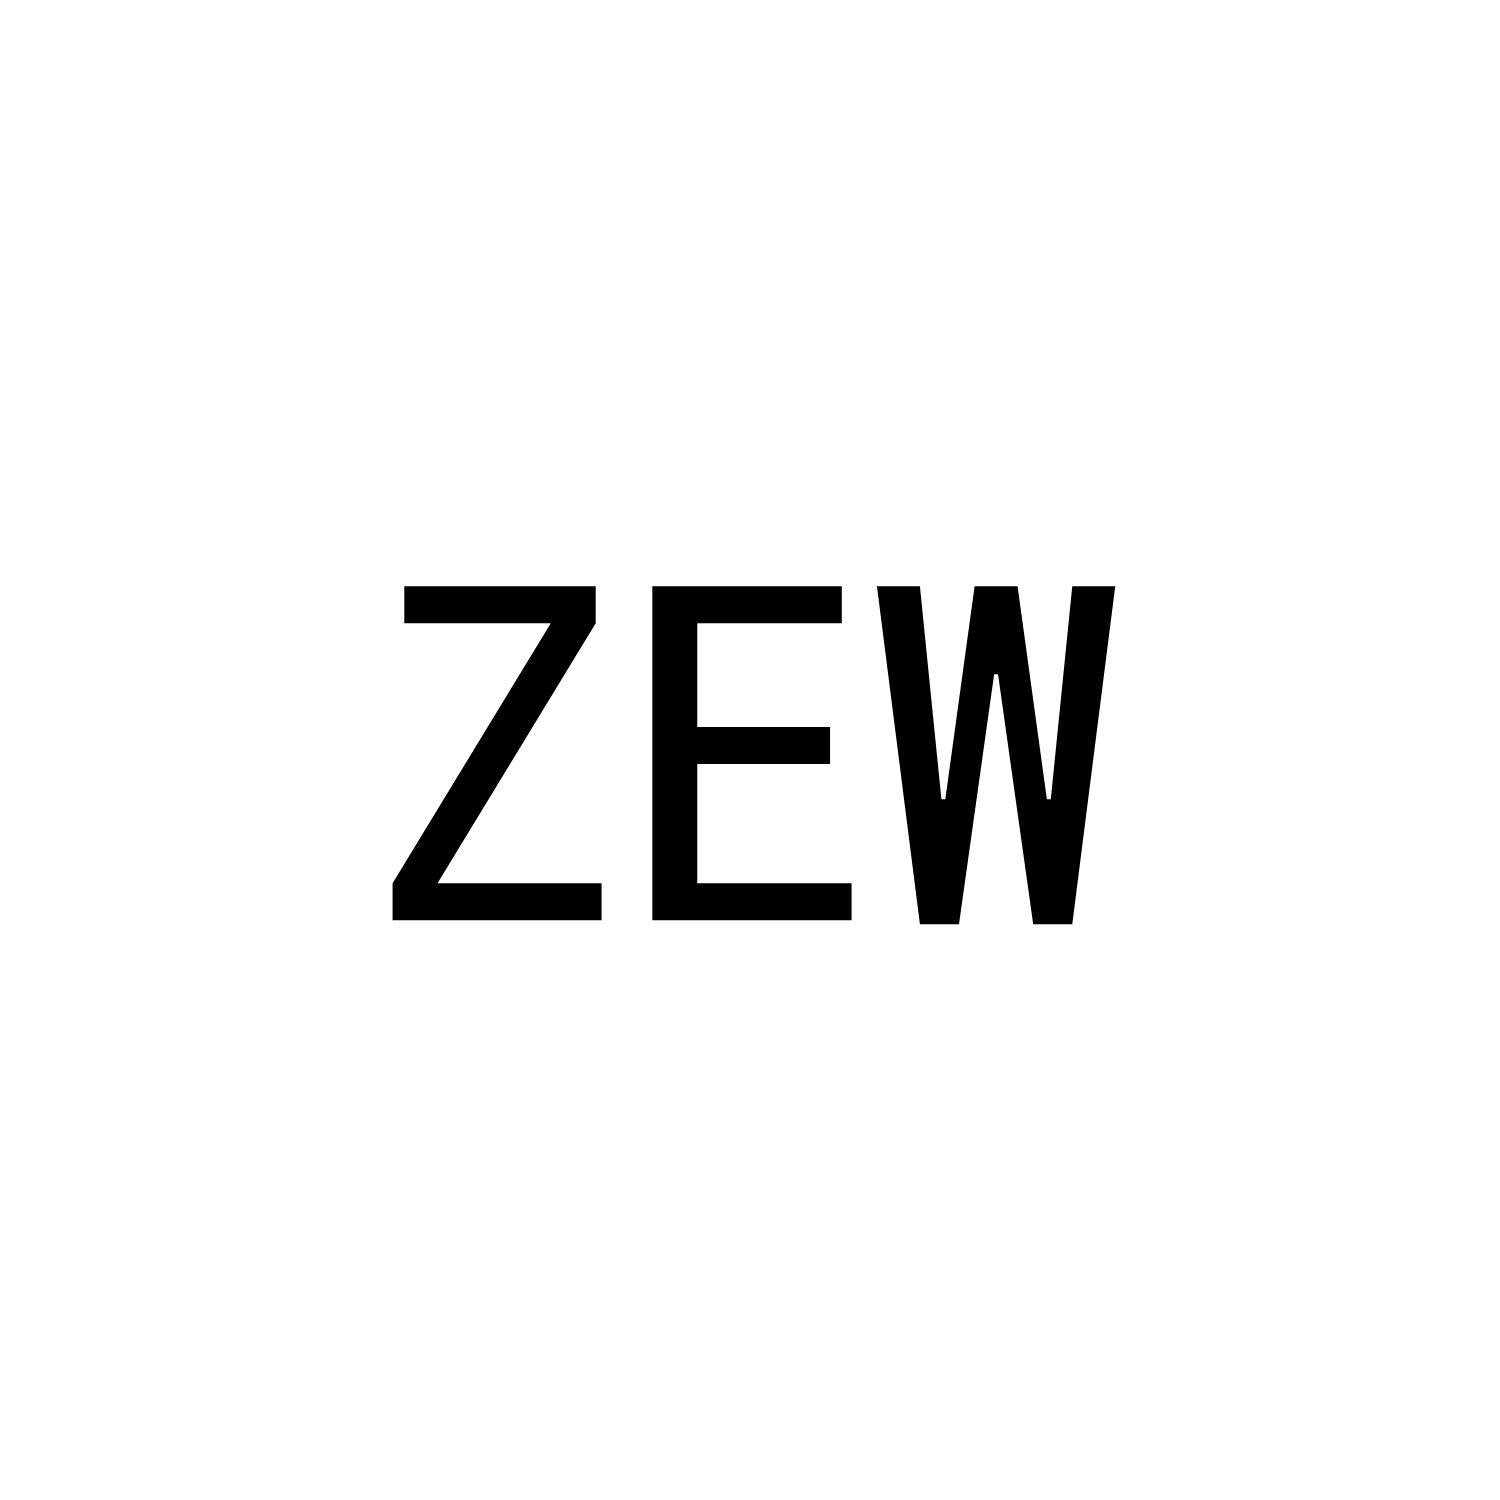 ZEW